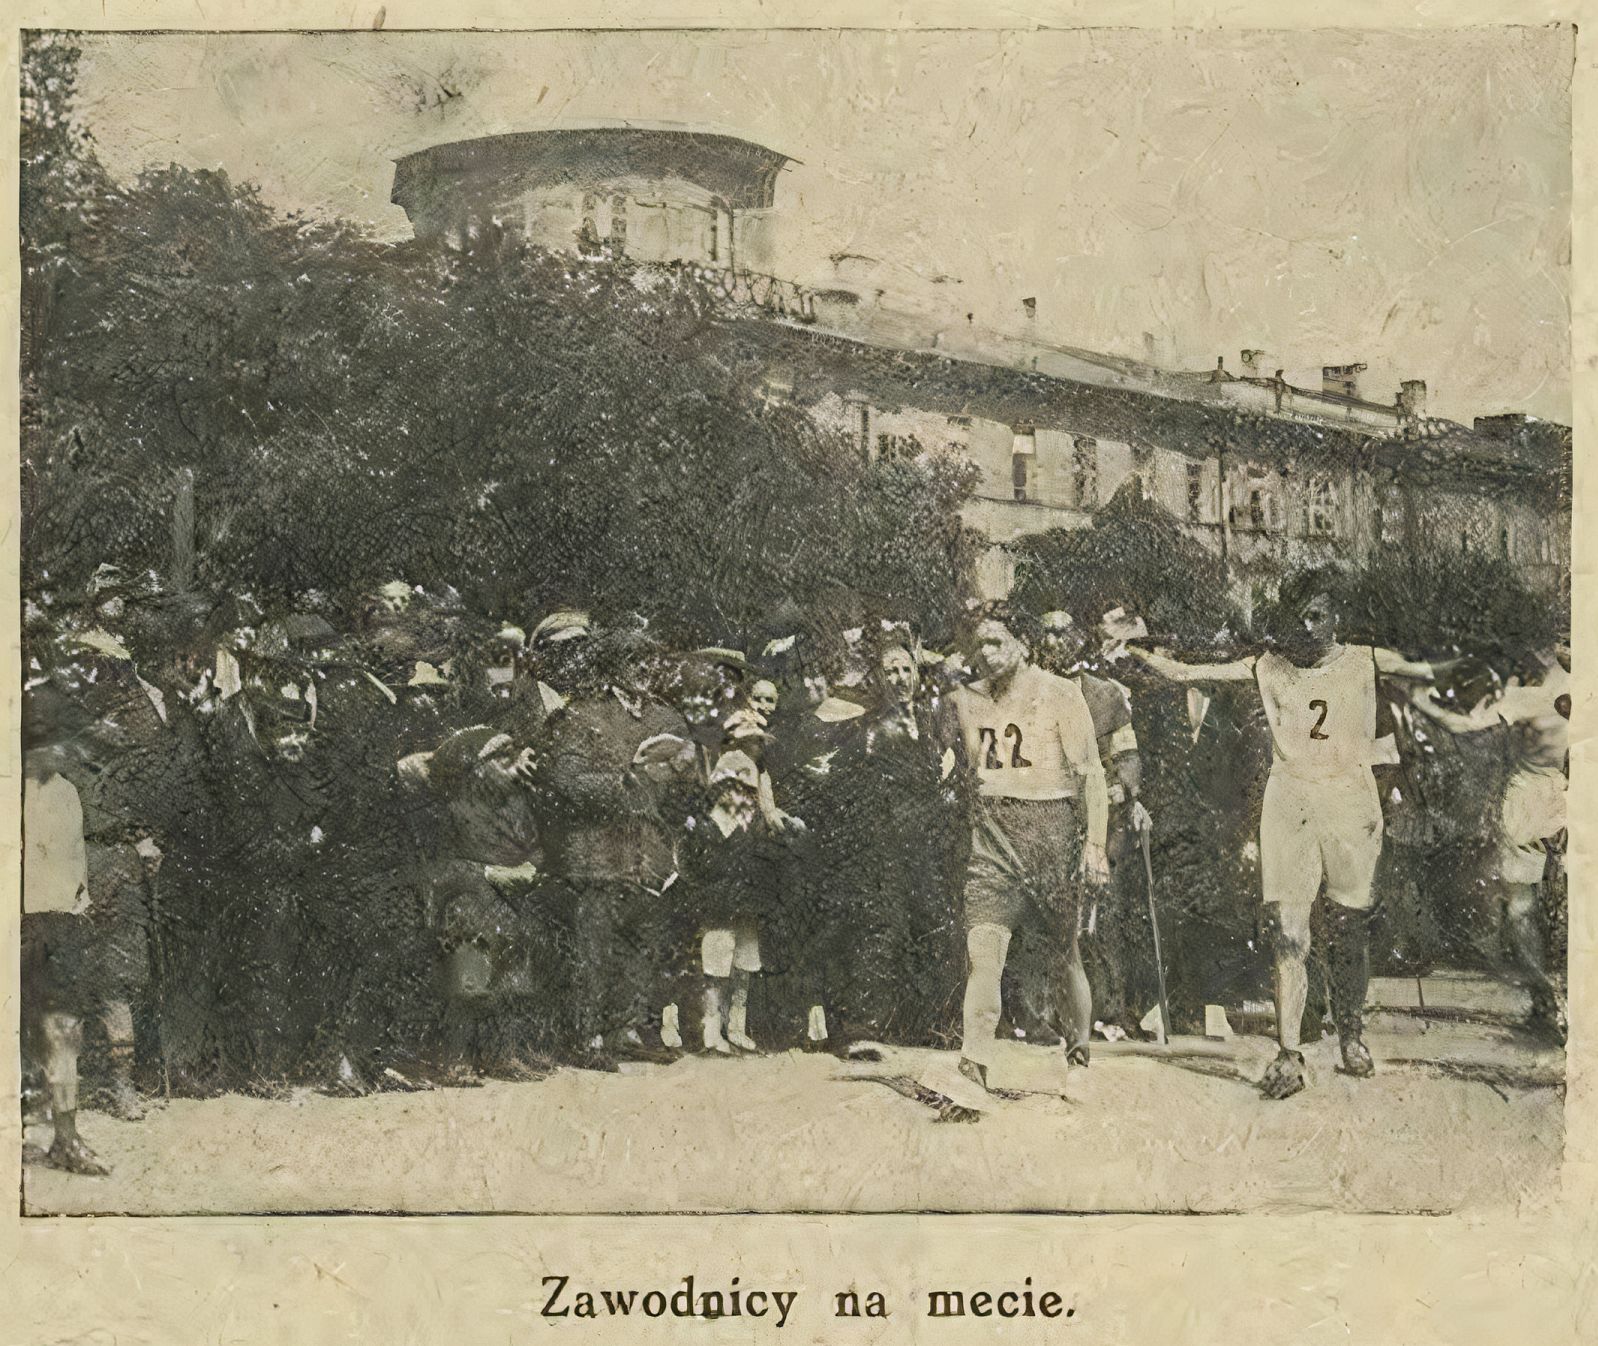 I Bieg Okrężny "Głosu Lubelskiego" z 1925 r.